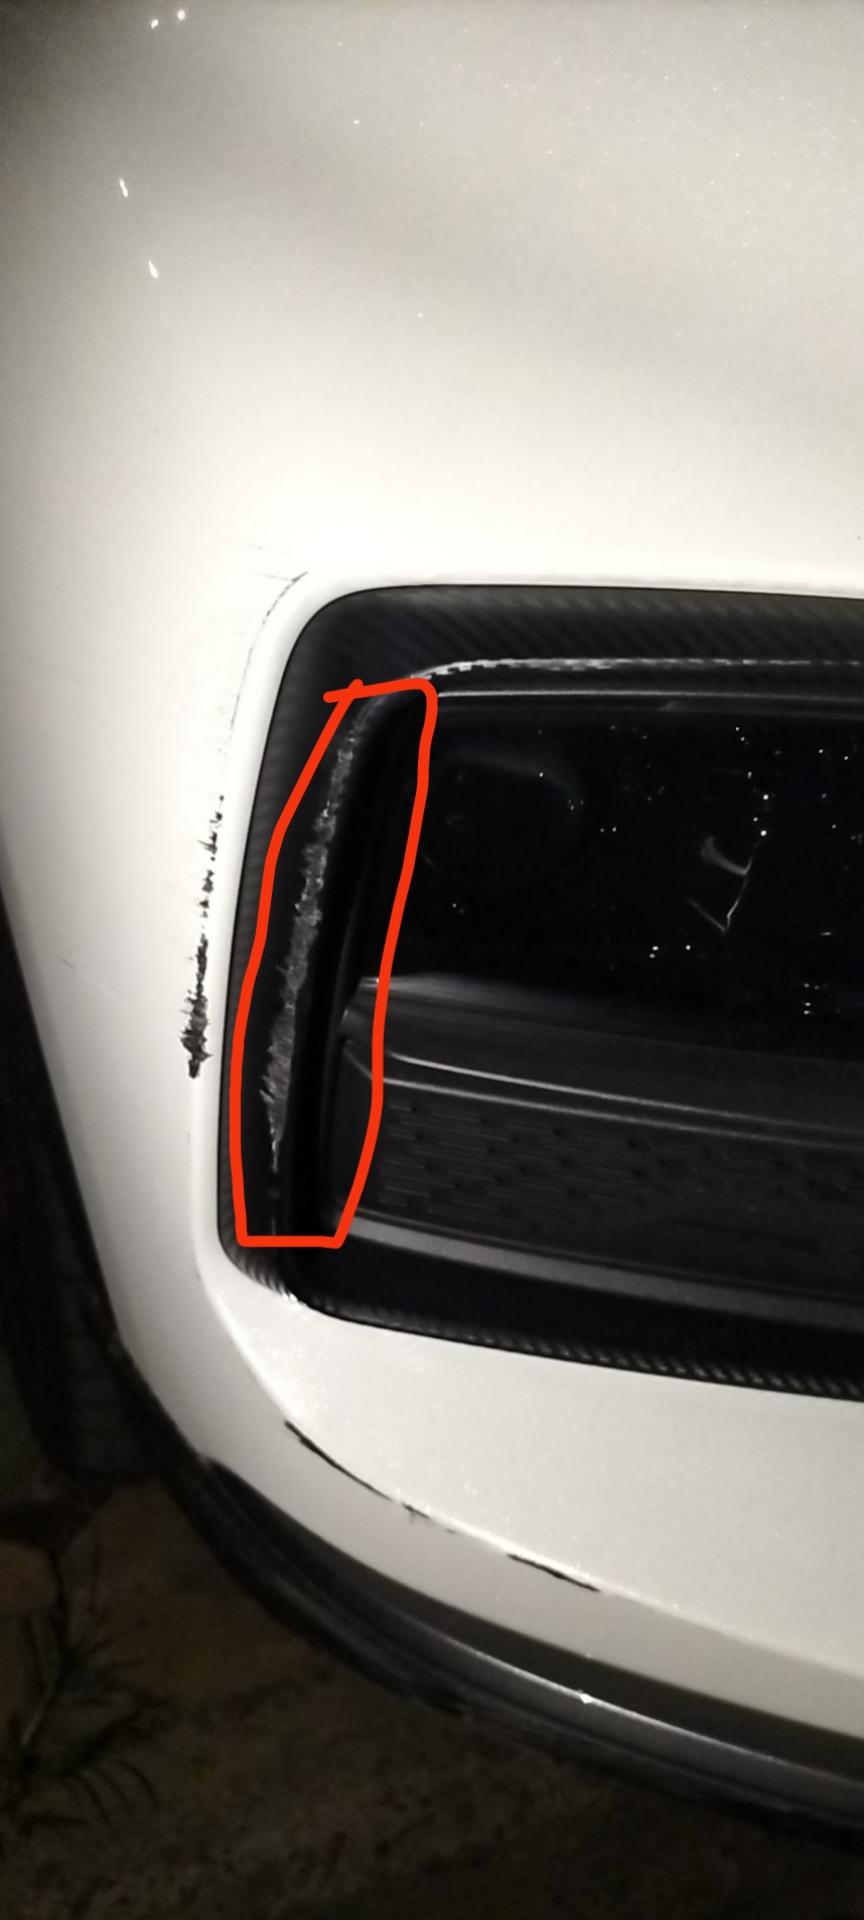 长安欧尚X5 长安欧尚x5旗舰款右前灯的黑色塑料外壳擦伤了 维修或者换一个大概多少钱